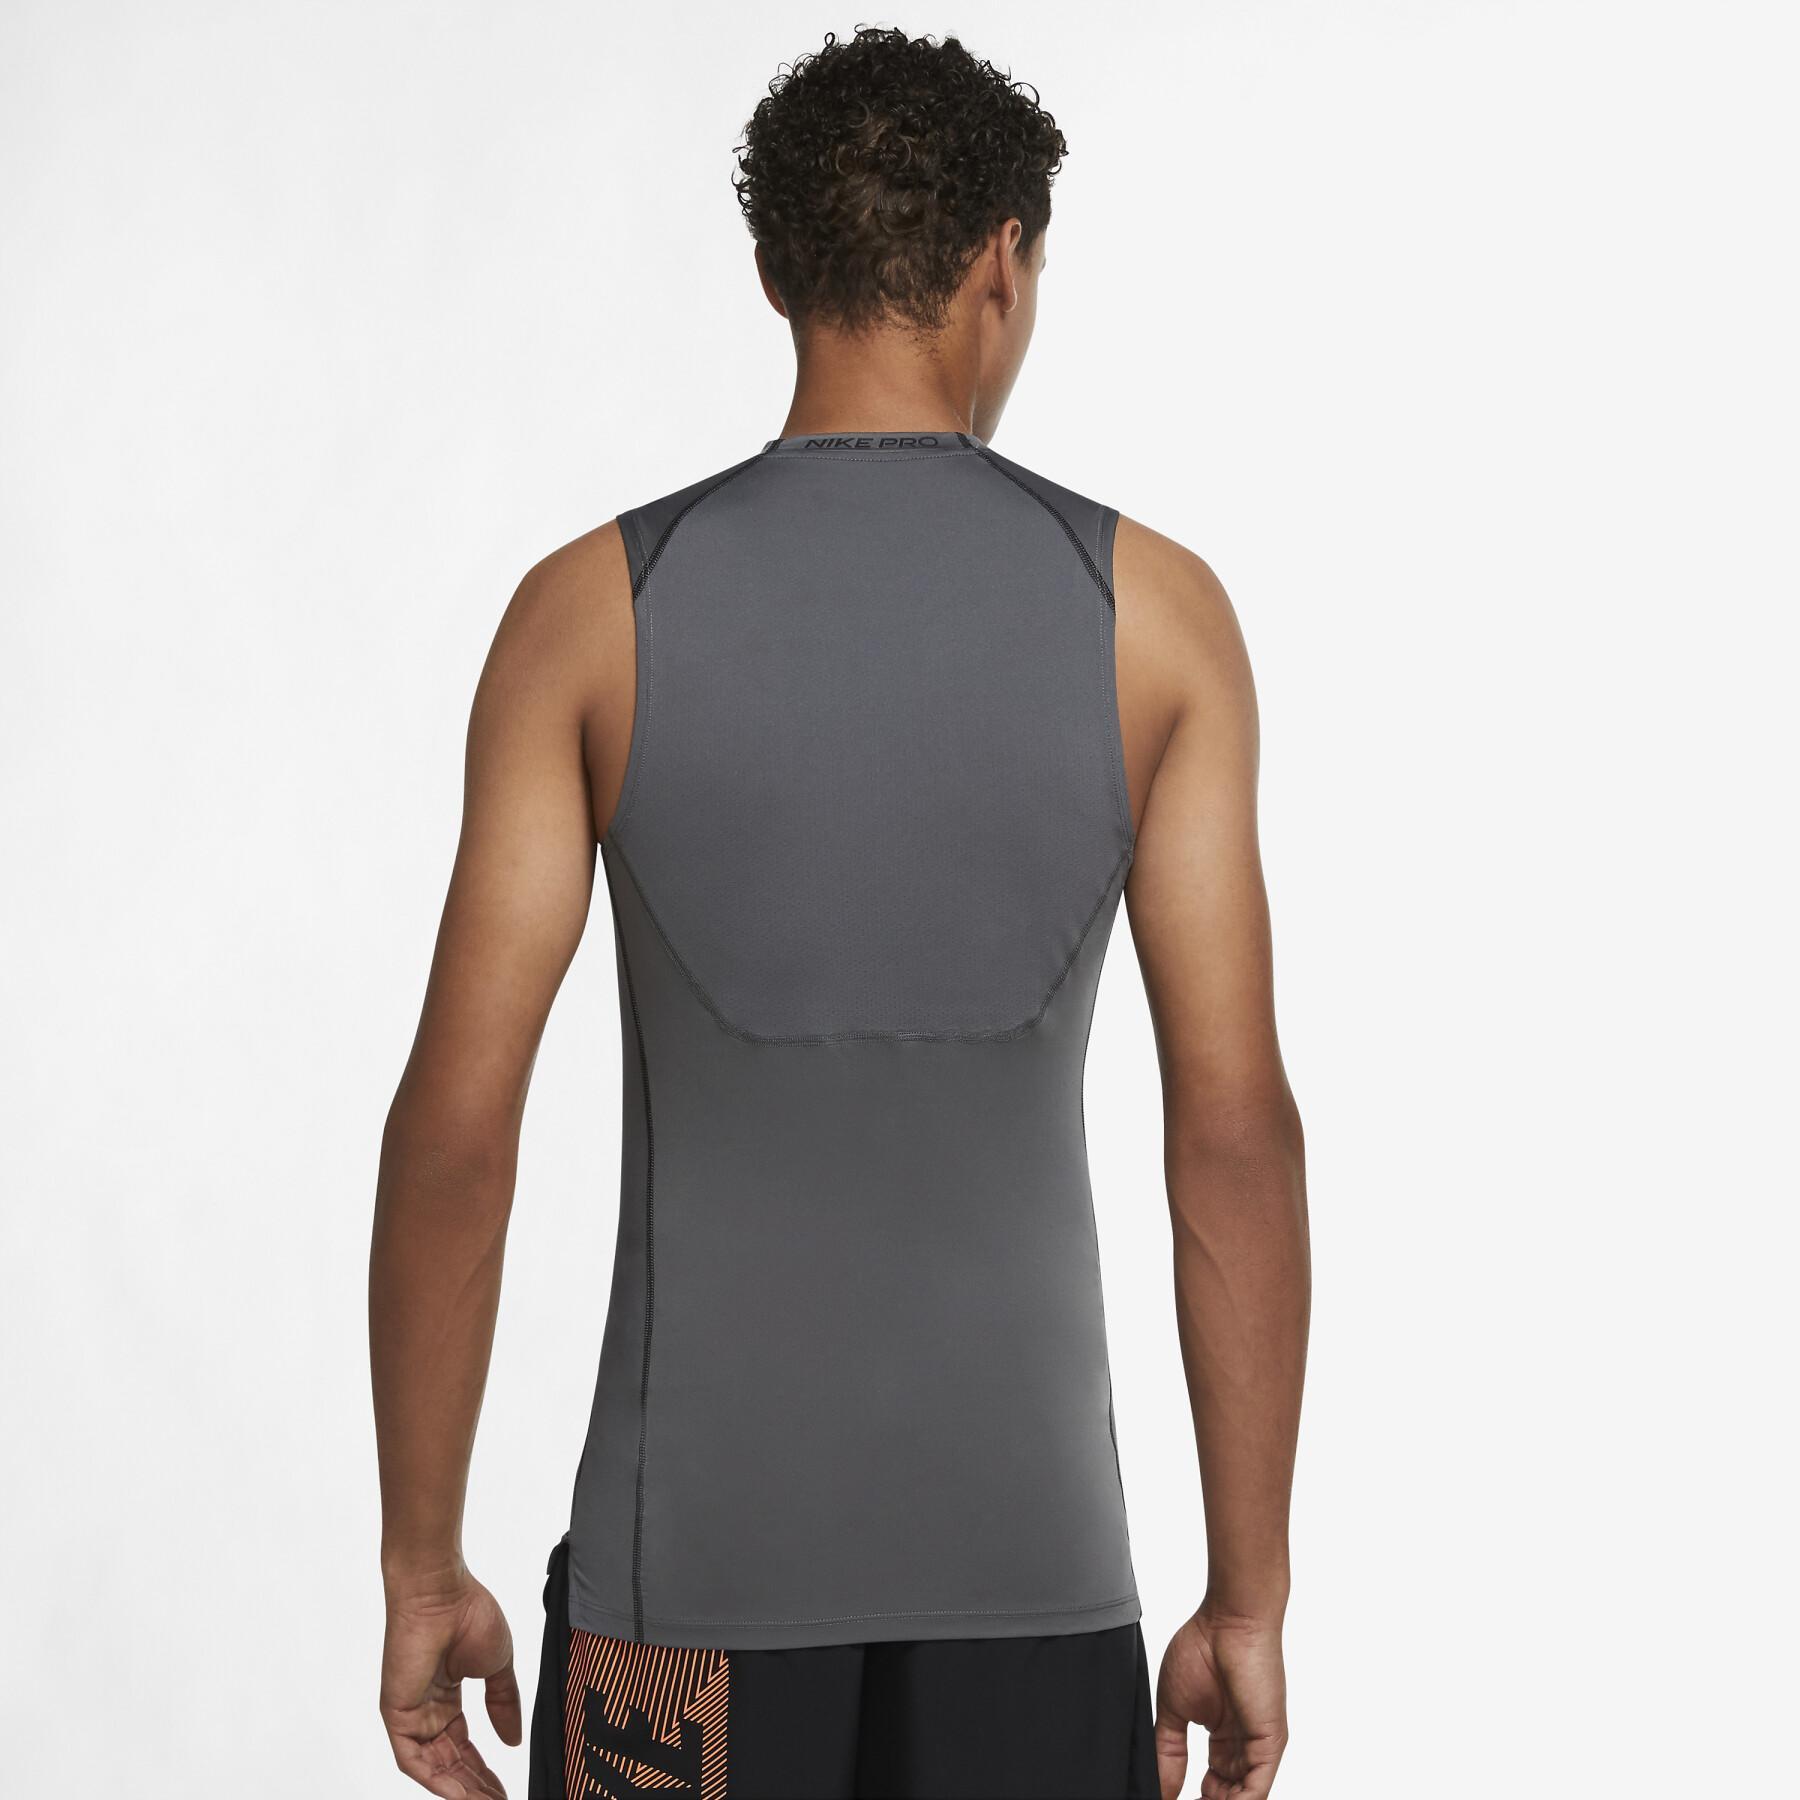 Sleeveless compression jersey Nike NP Dri-Fit - Jerseys - Men's wear -  Basketball wear